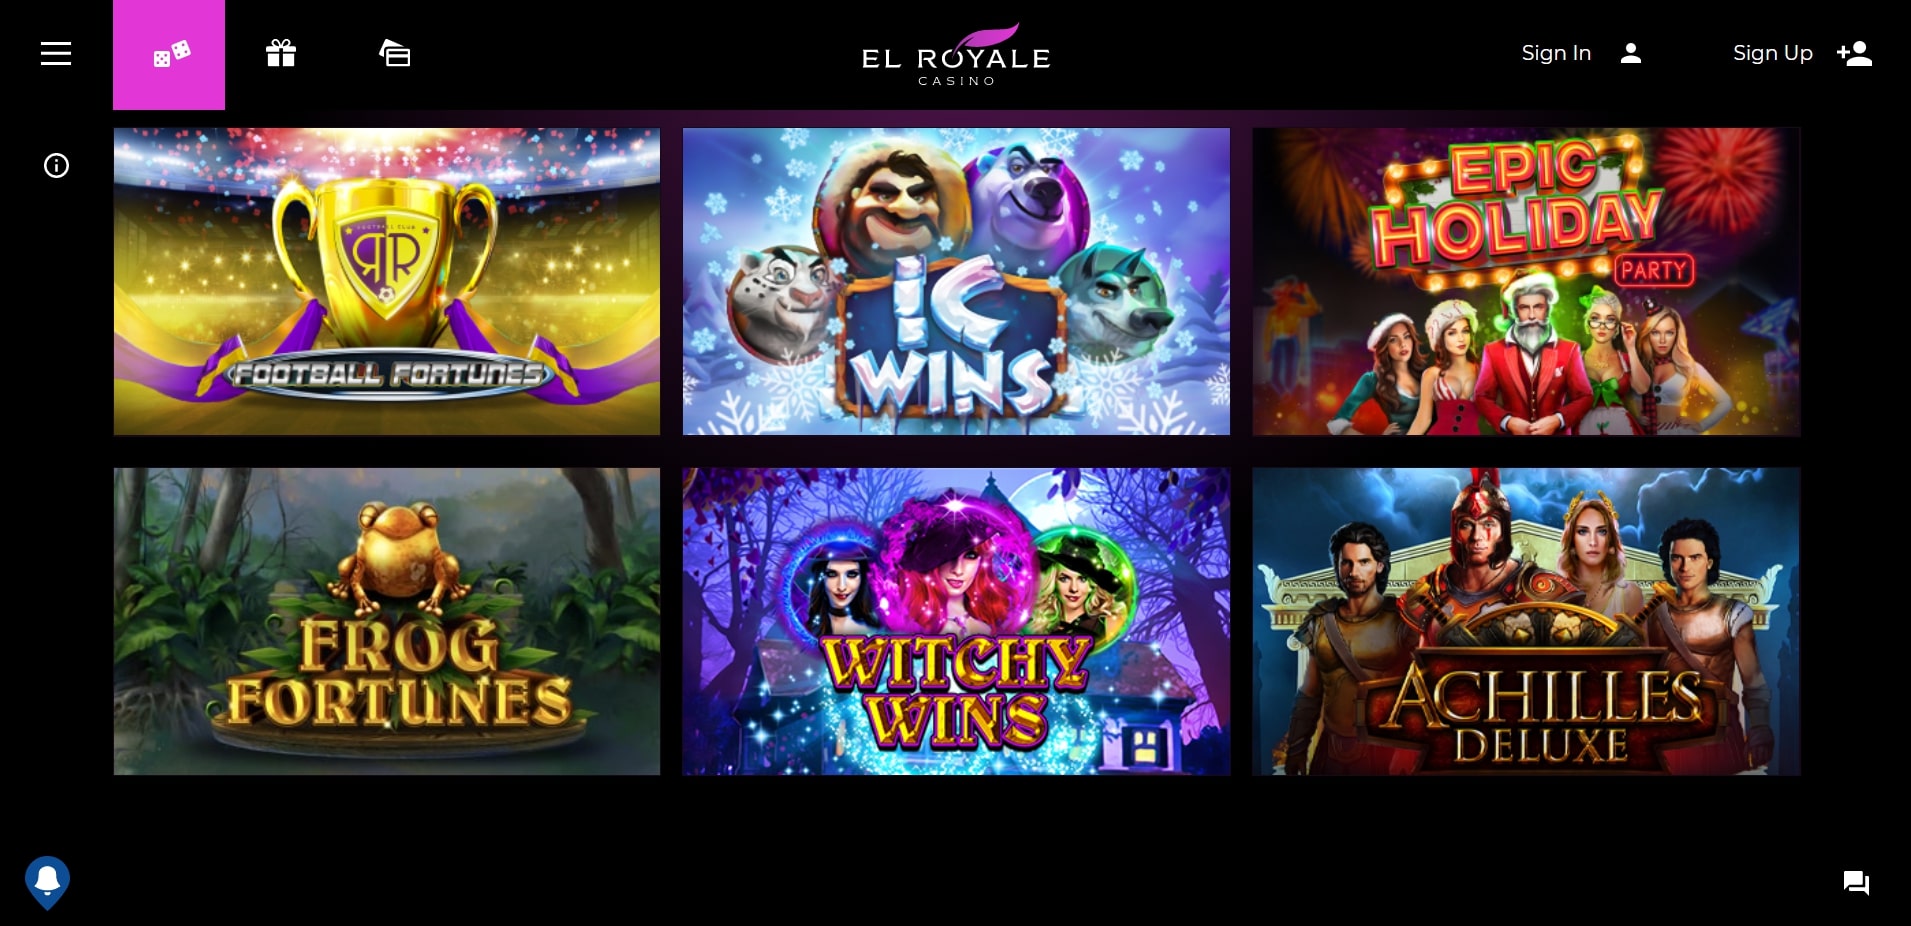 el royale casino free spins codes